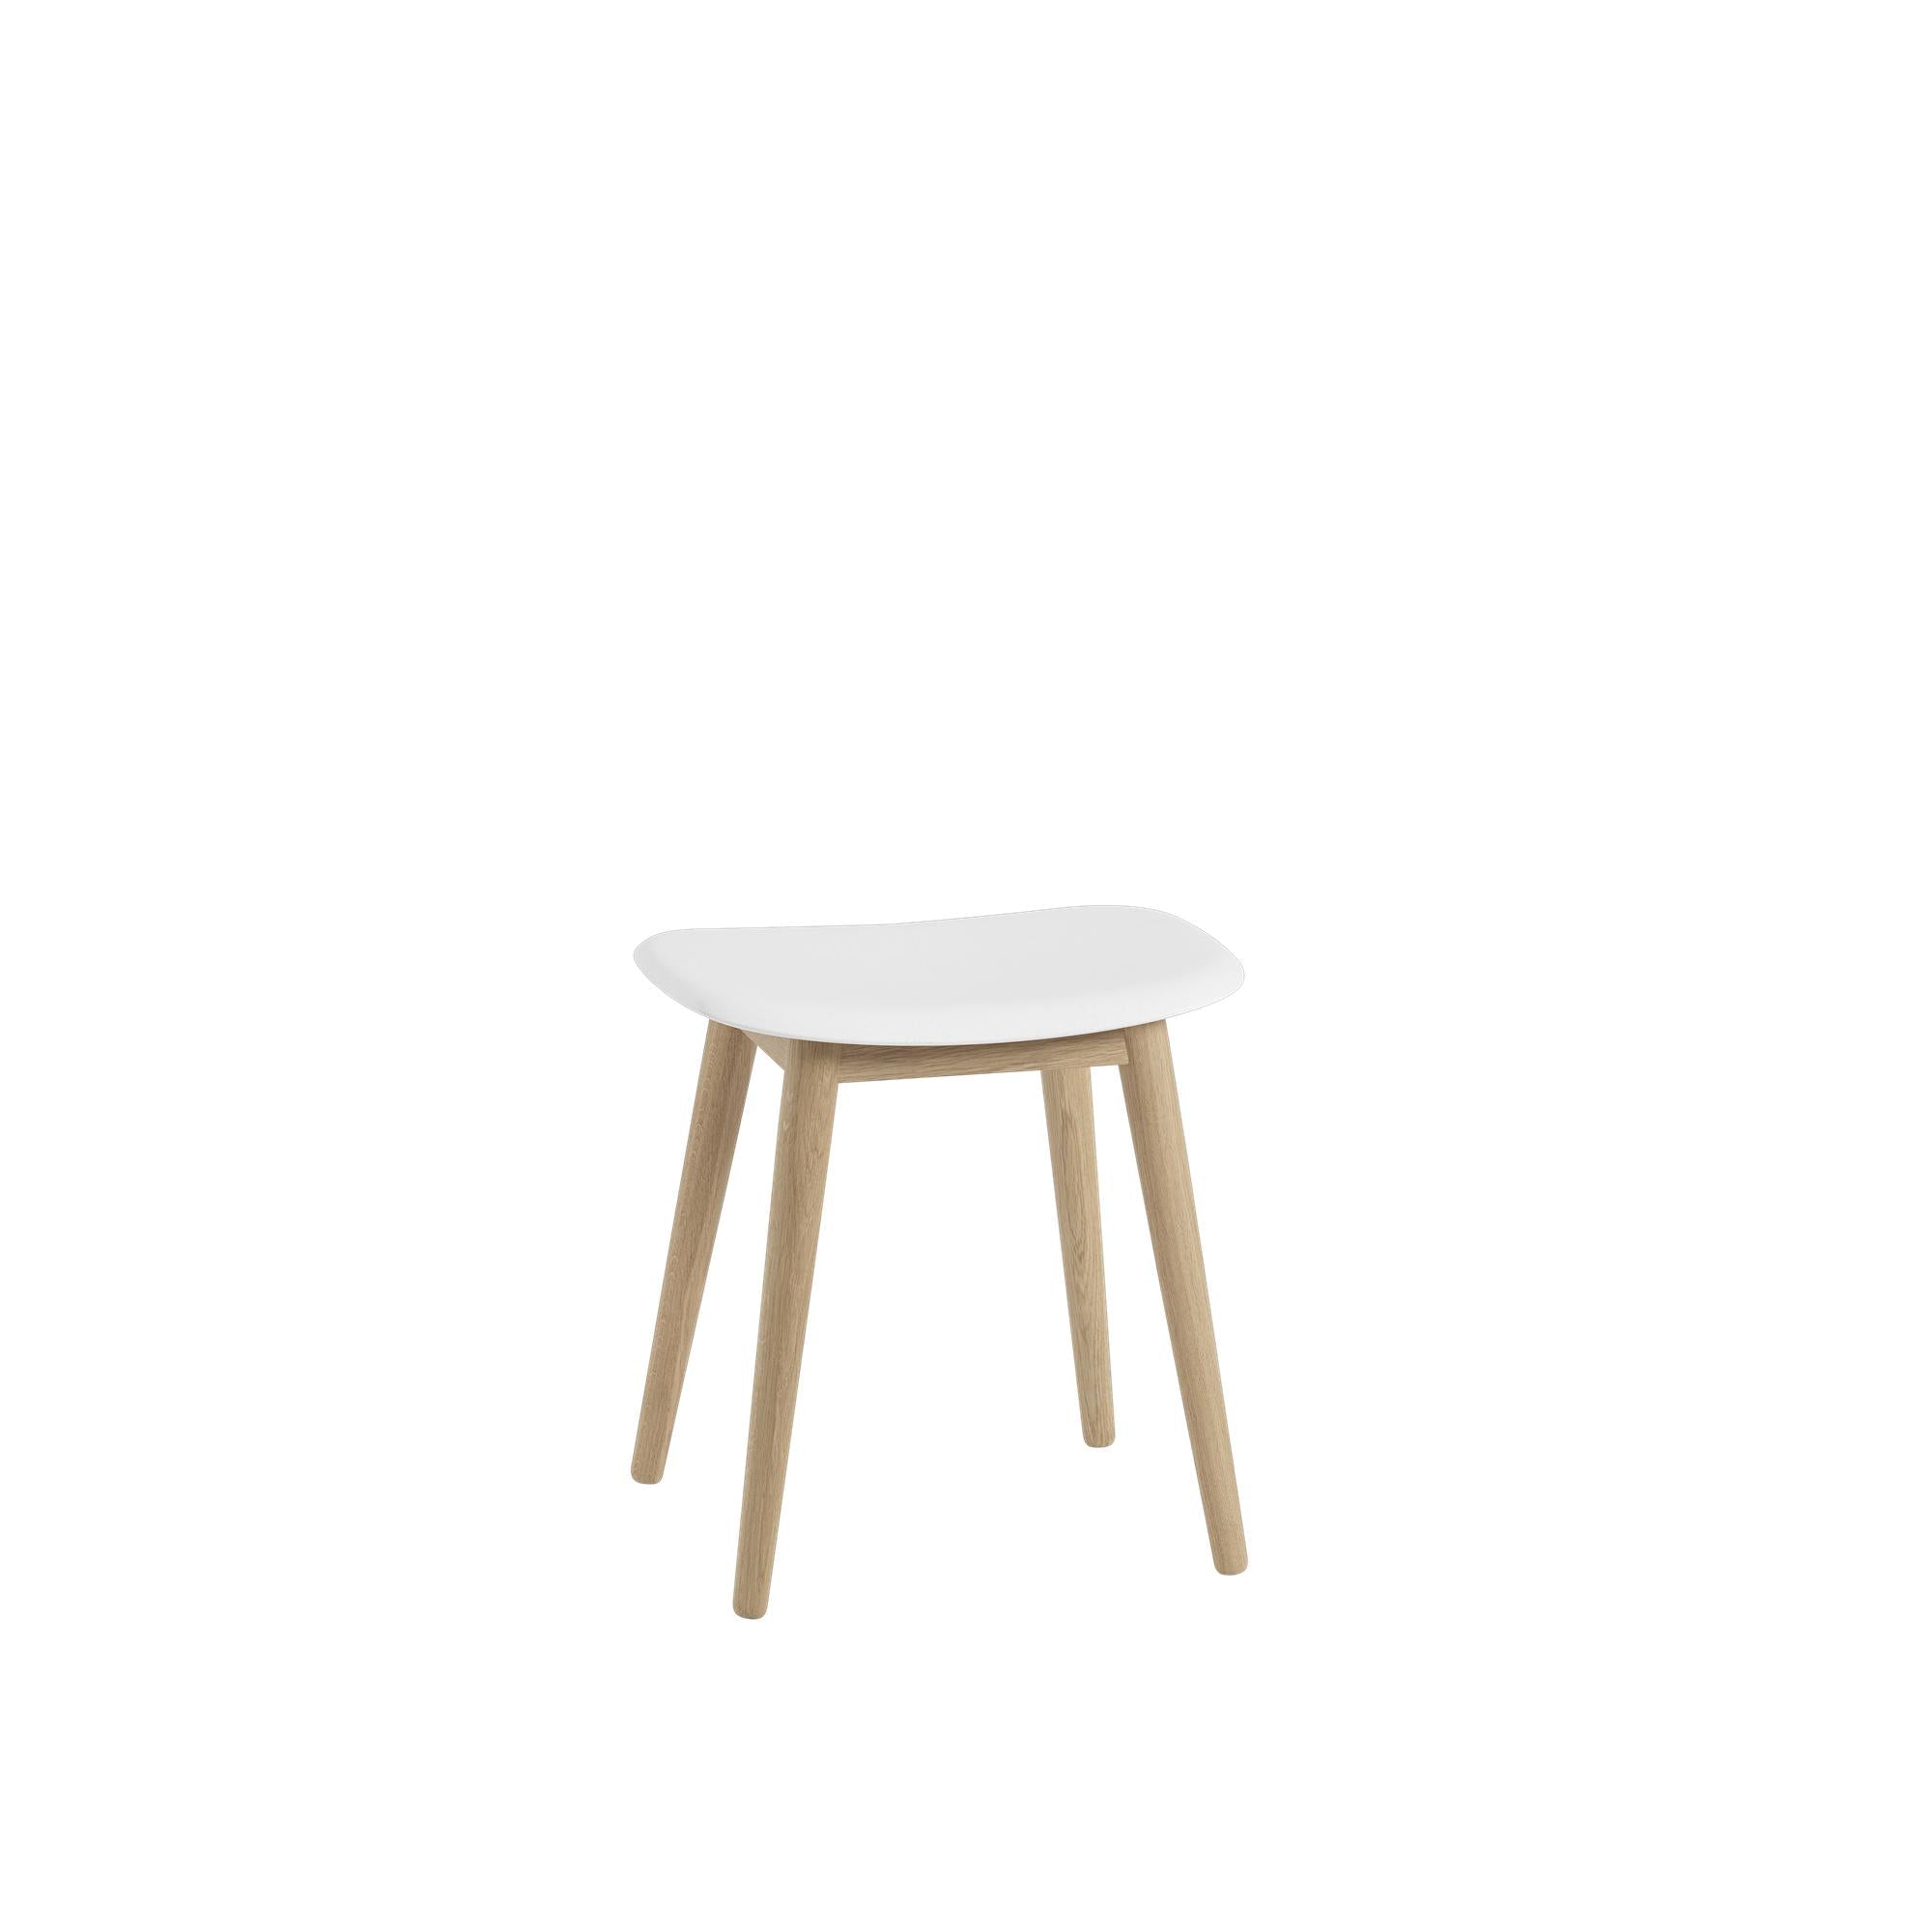 Muuto vezel kruk houten benen, vezel/lederen stoel, wit